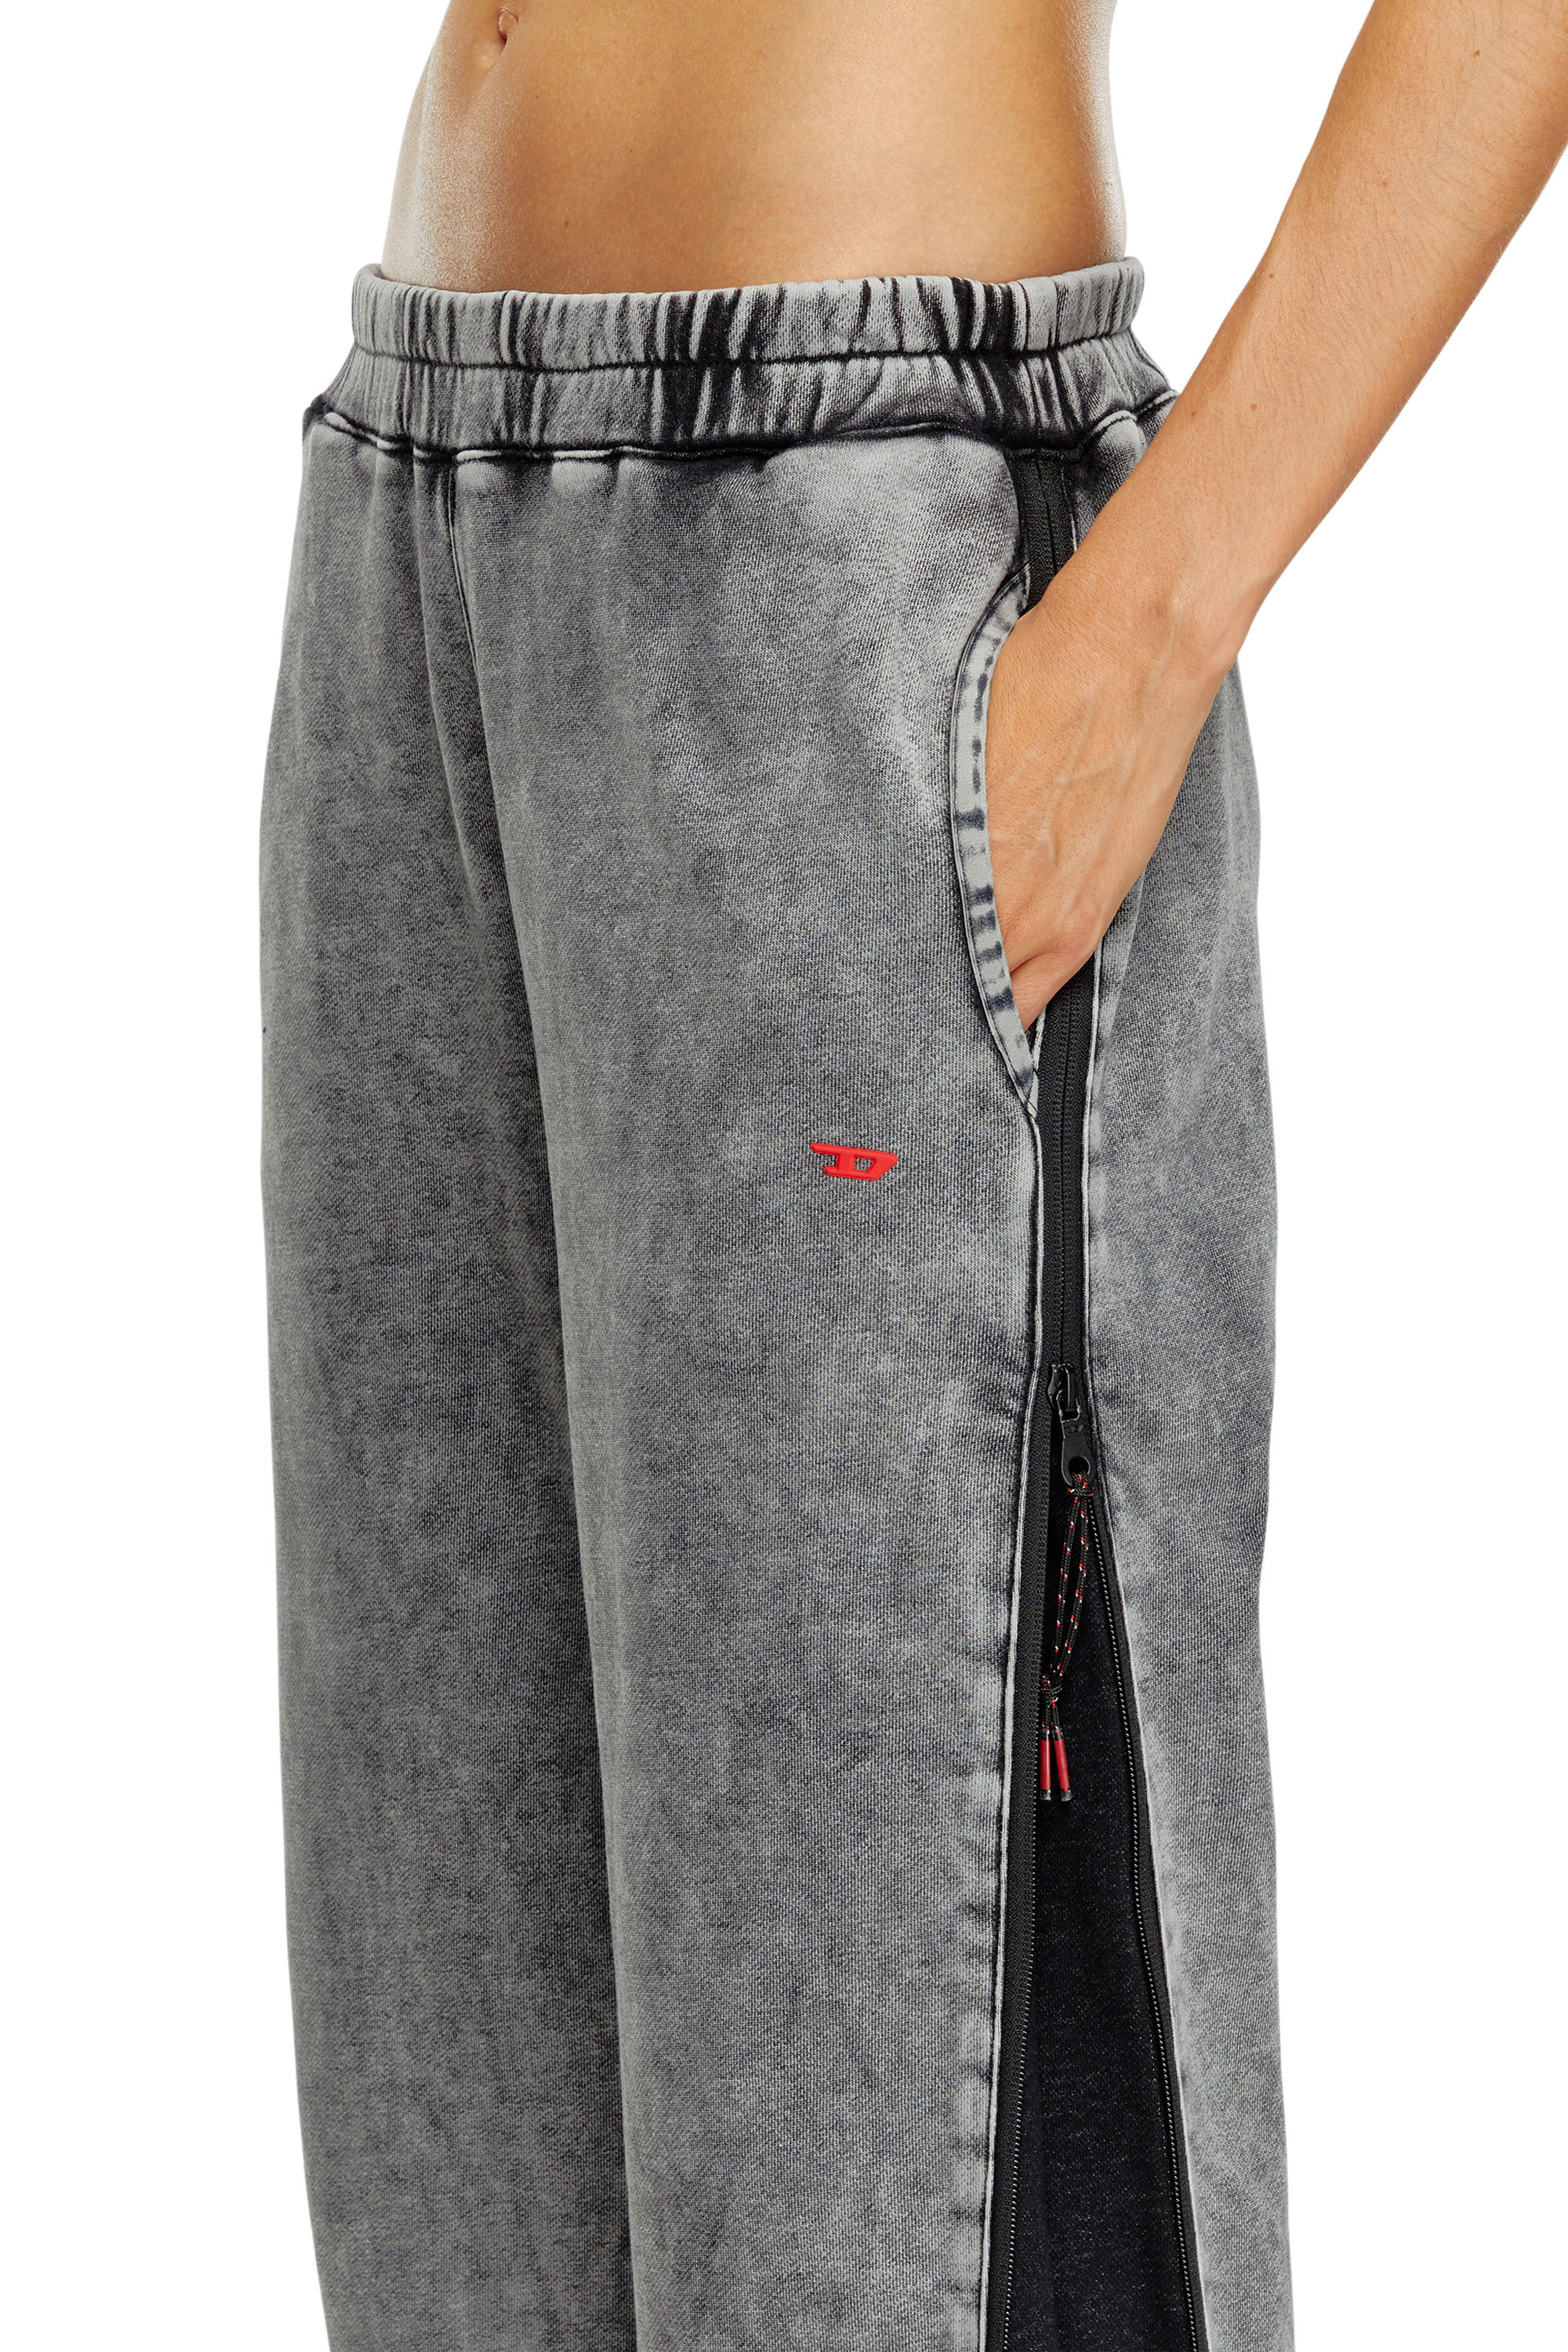 Diesel - AWSB-DELANEY-HT51, Mujer Pantalones deportivos desteñidos con laterales con cremallera in Gris - Image 4